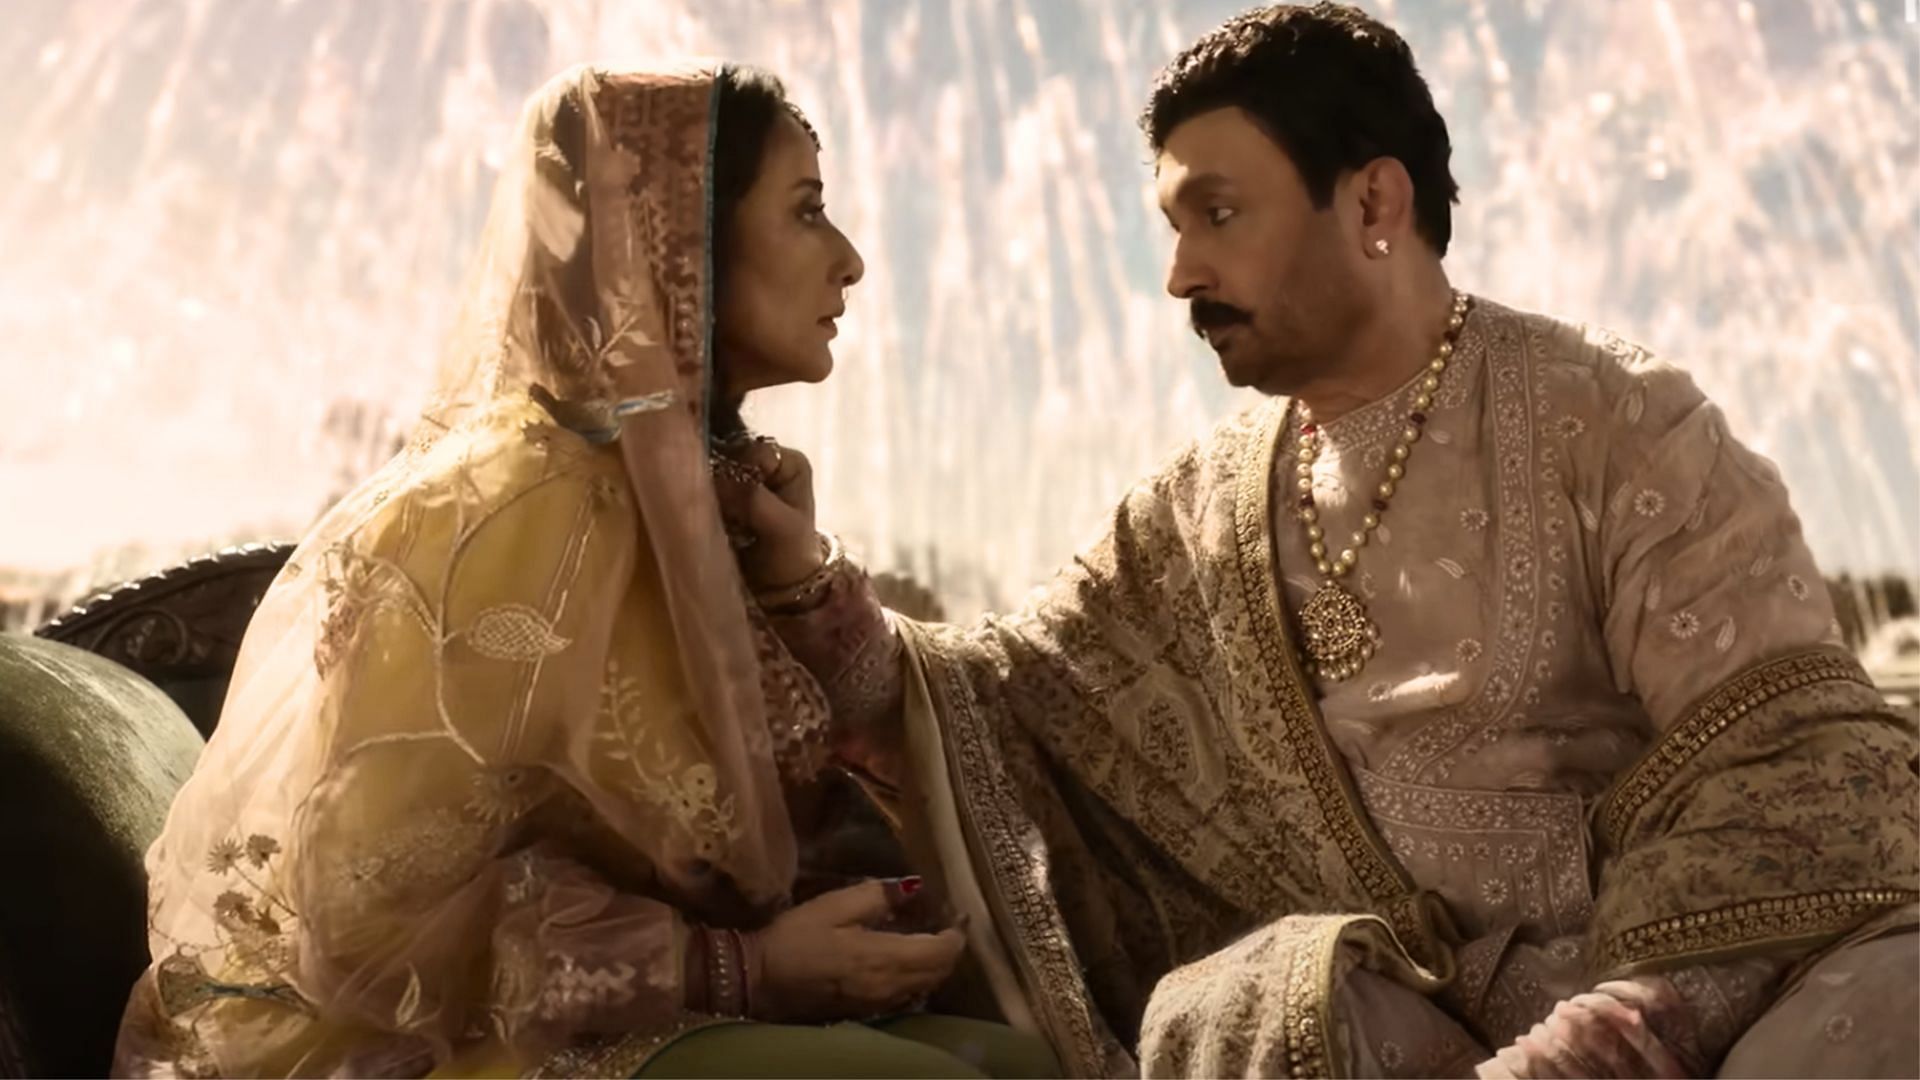 Shekhar Suman in a scene with Manisha Koirala (Image via Netflix)